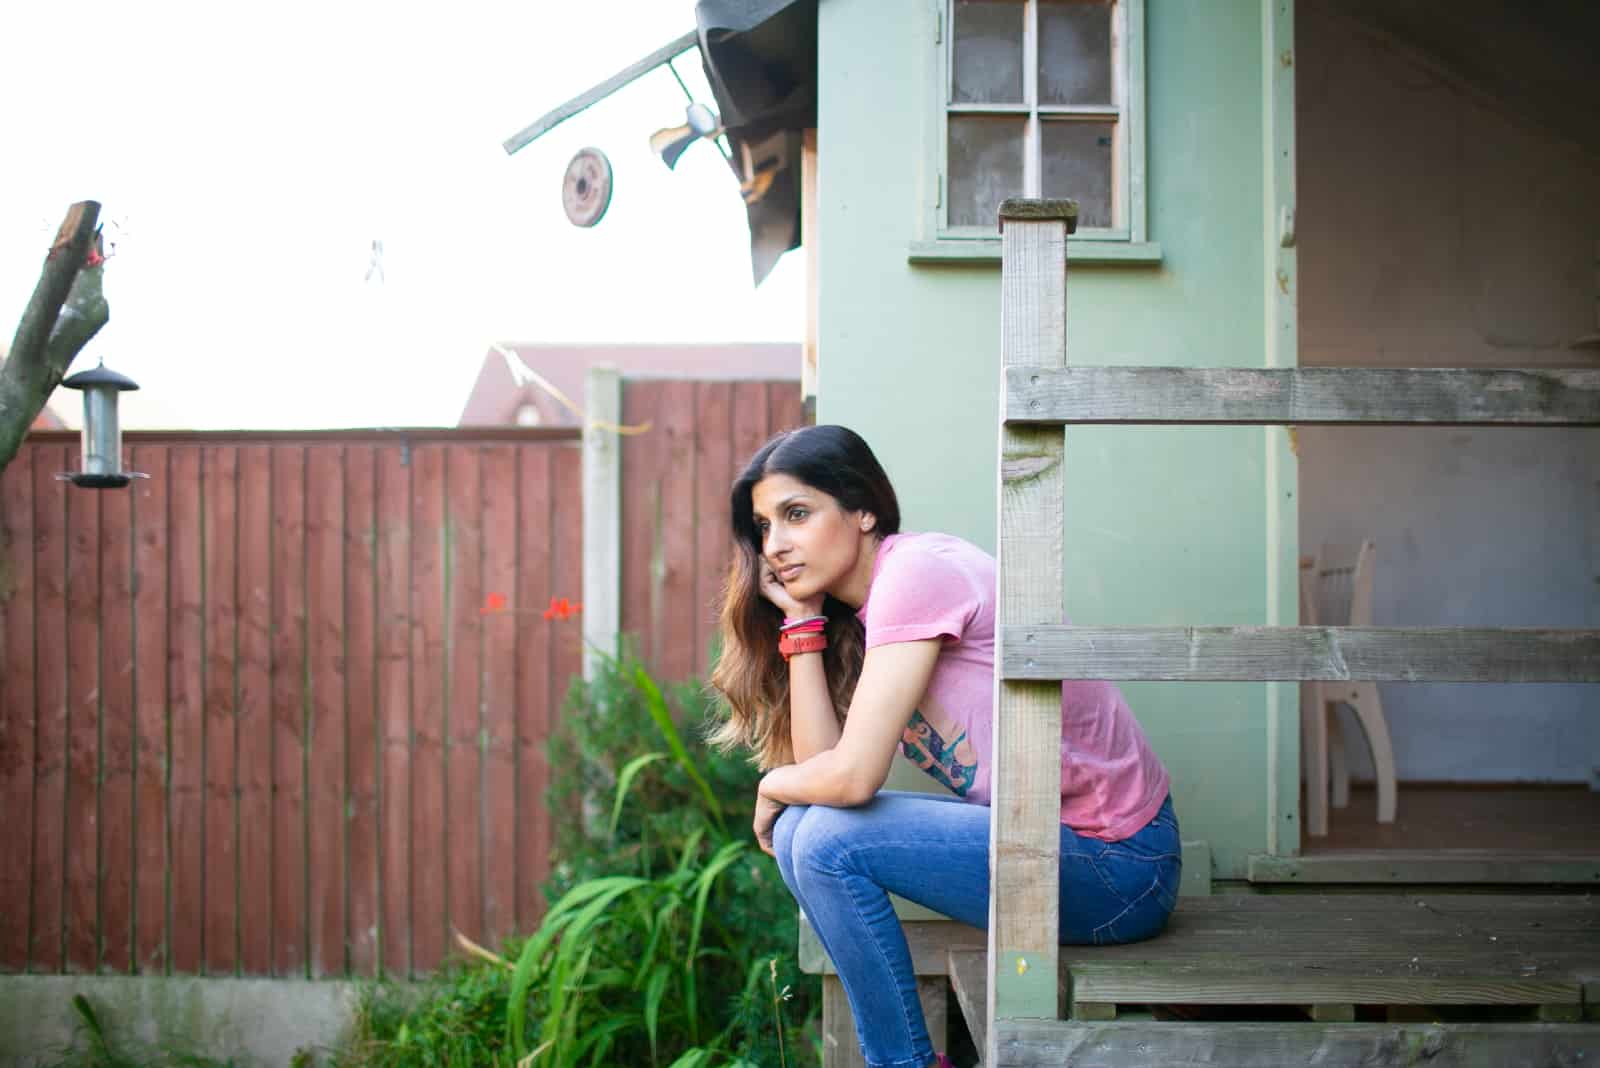 femme pensive en t-shirt rose assis près du mur